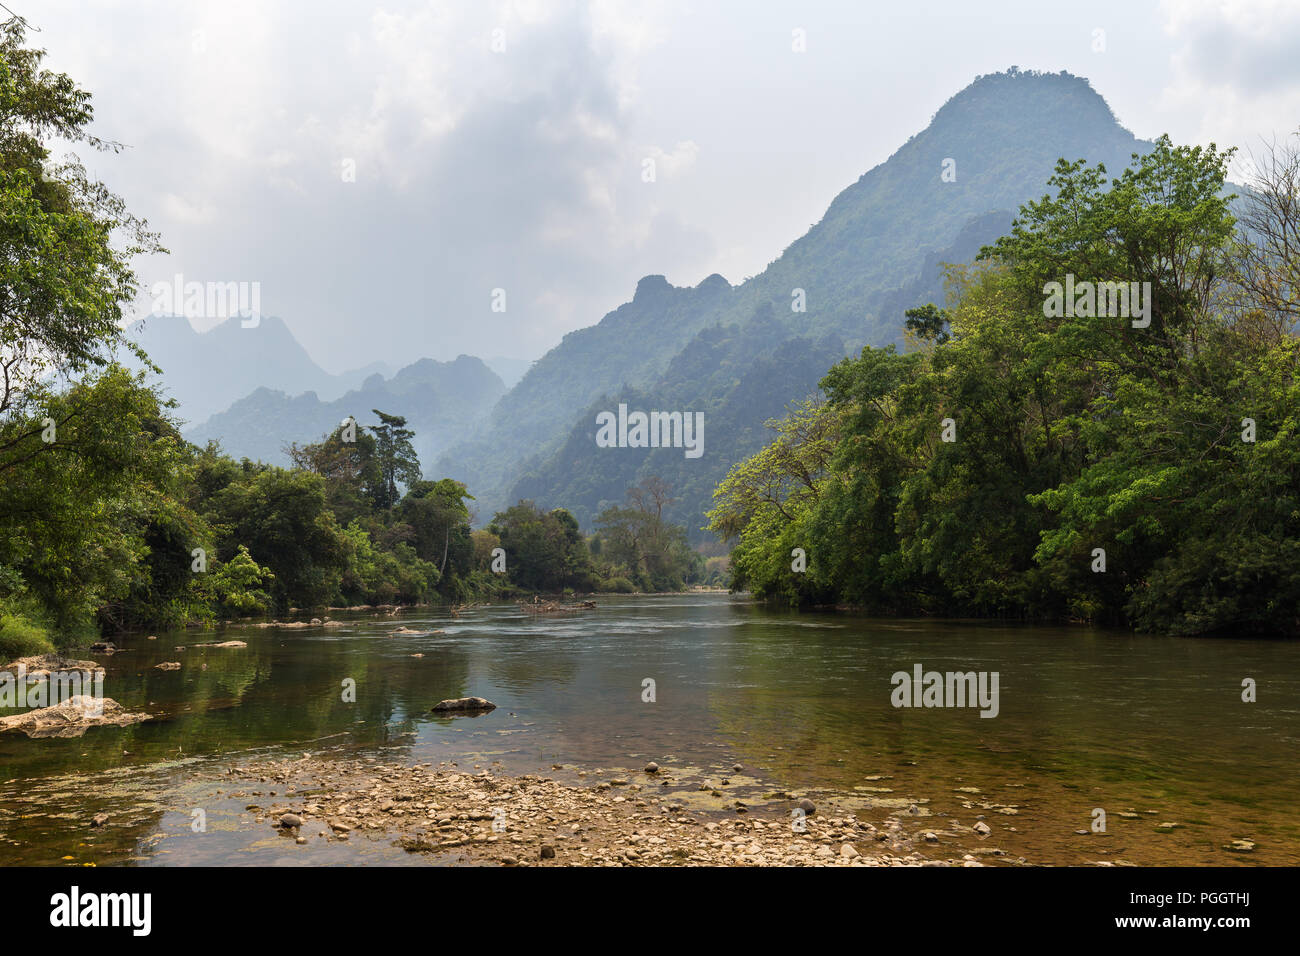 Vista panorámica del río Nam Song y las montañas de piedra caliza cerca de Vang Vieng, provincia de Vientiane, Laos. Foto de stock